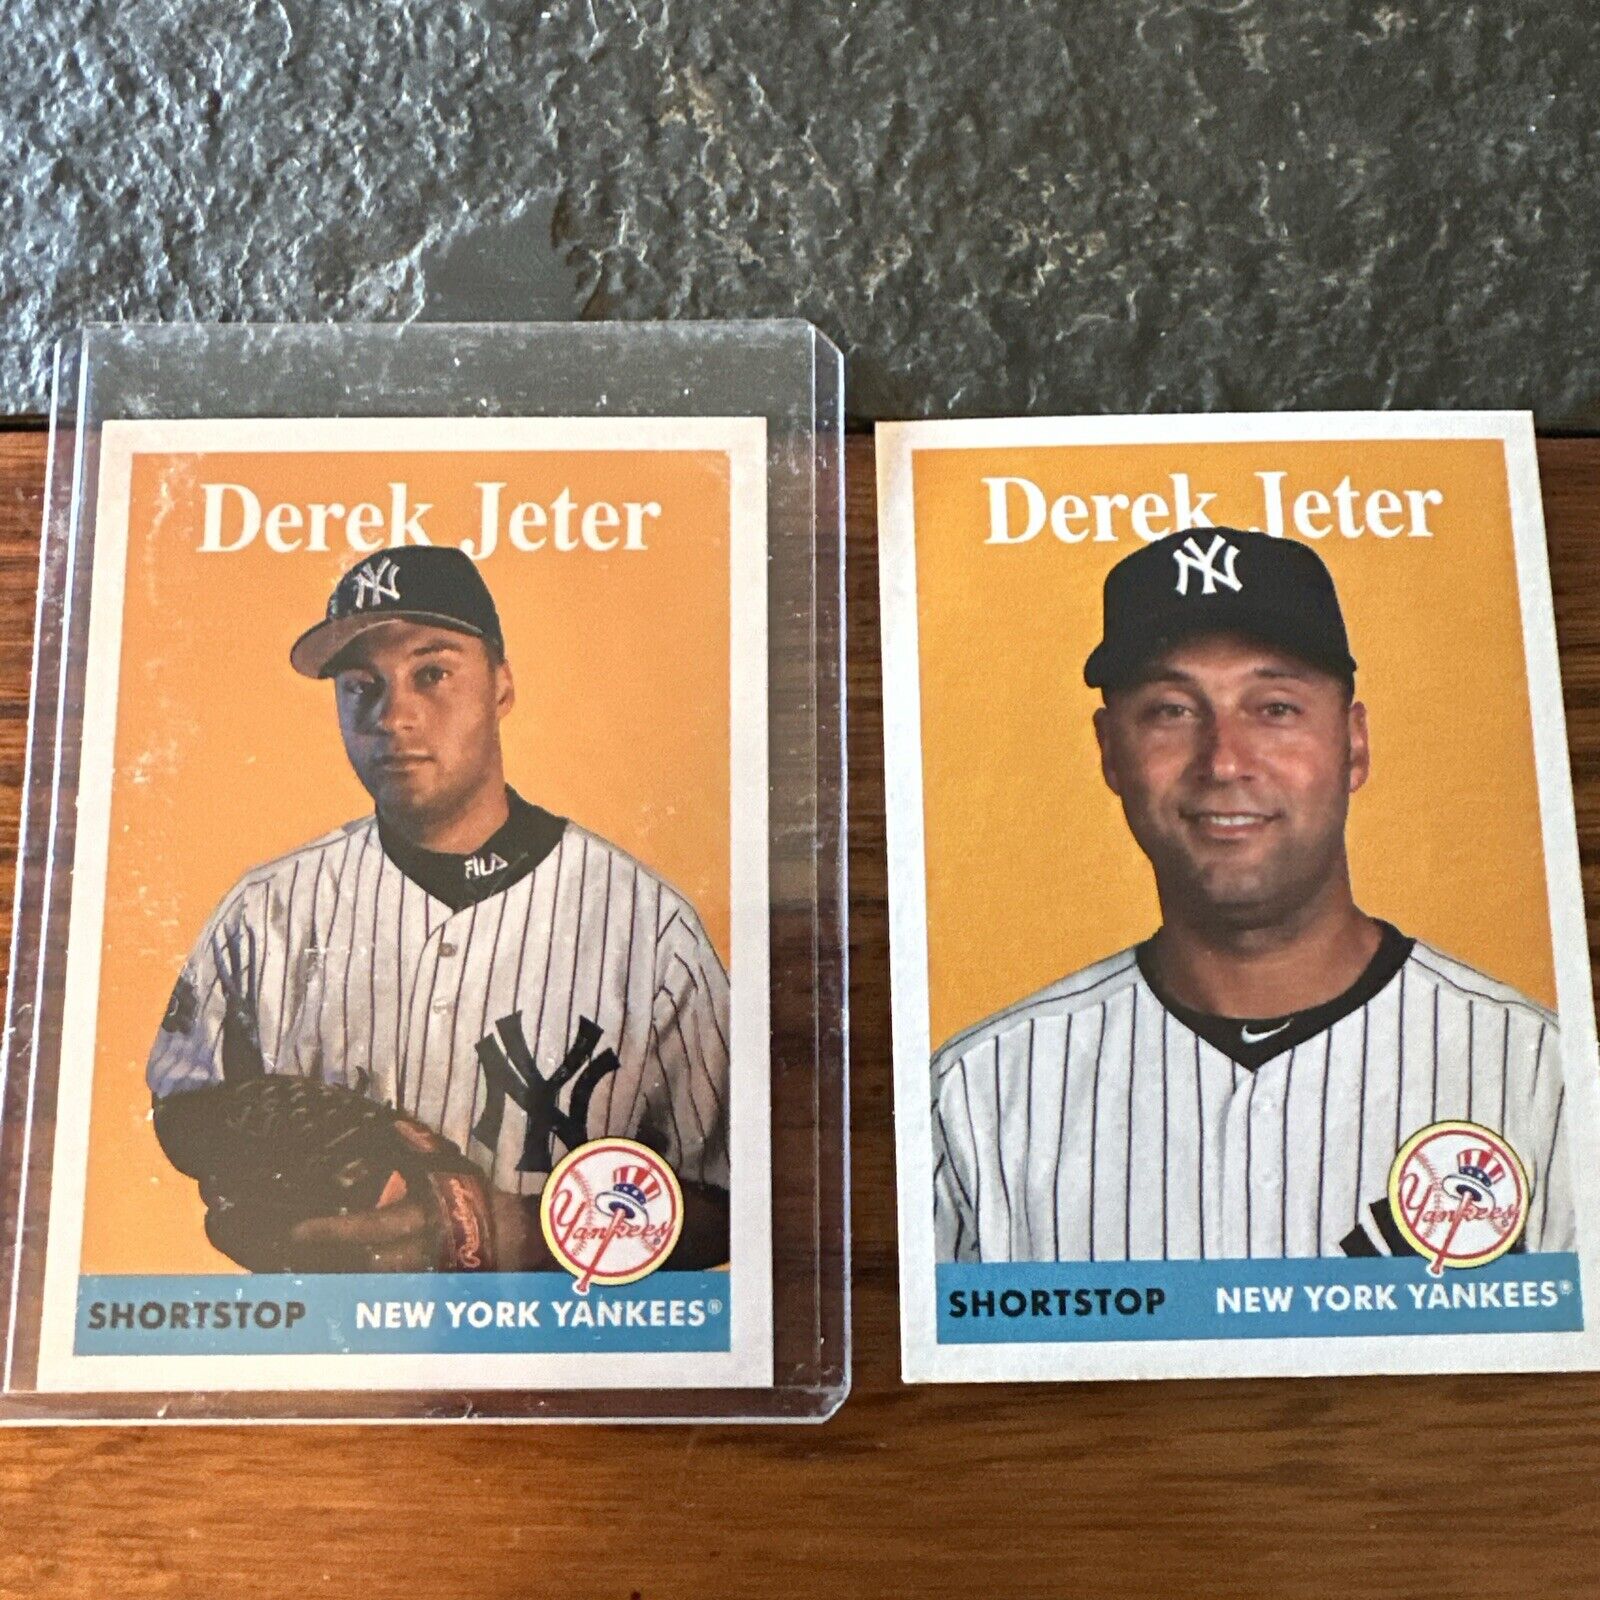 Derek Jeter 2019 Topps Archives Yankees image variation